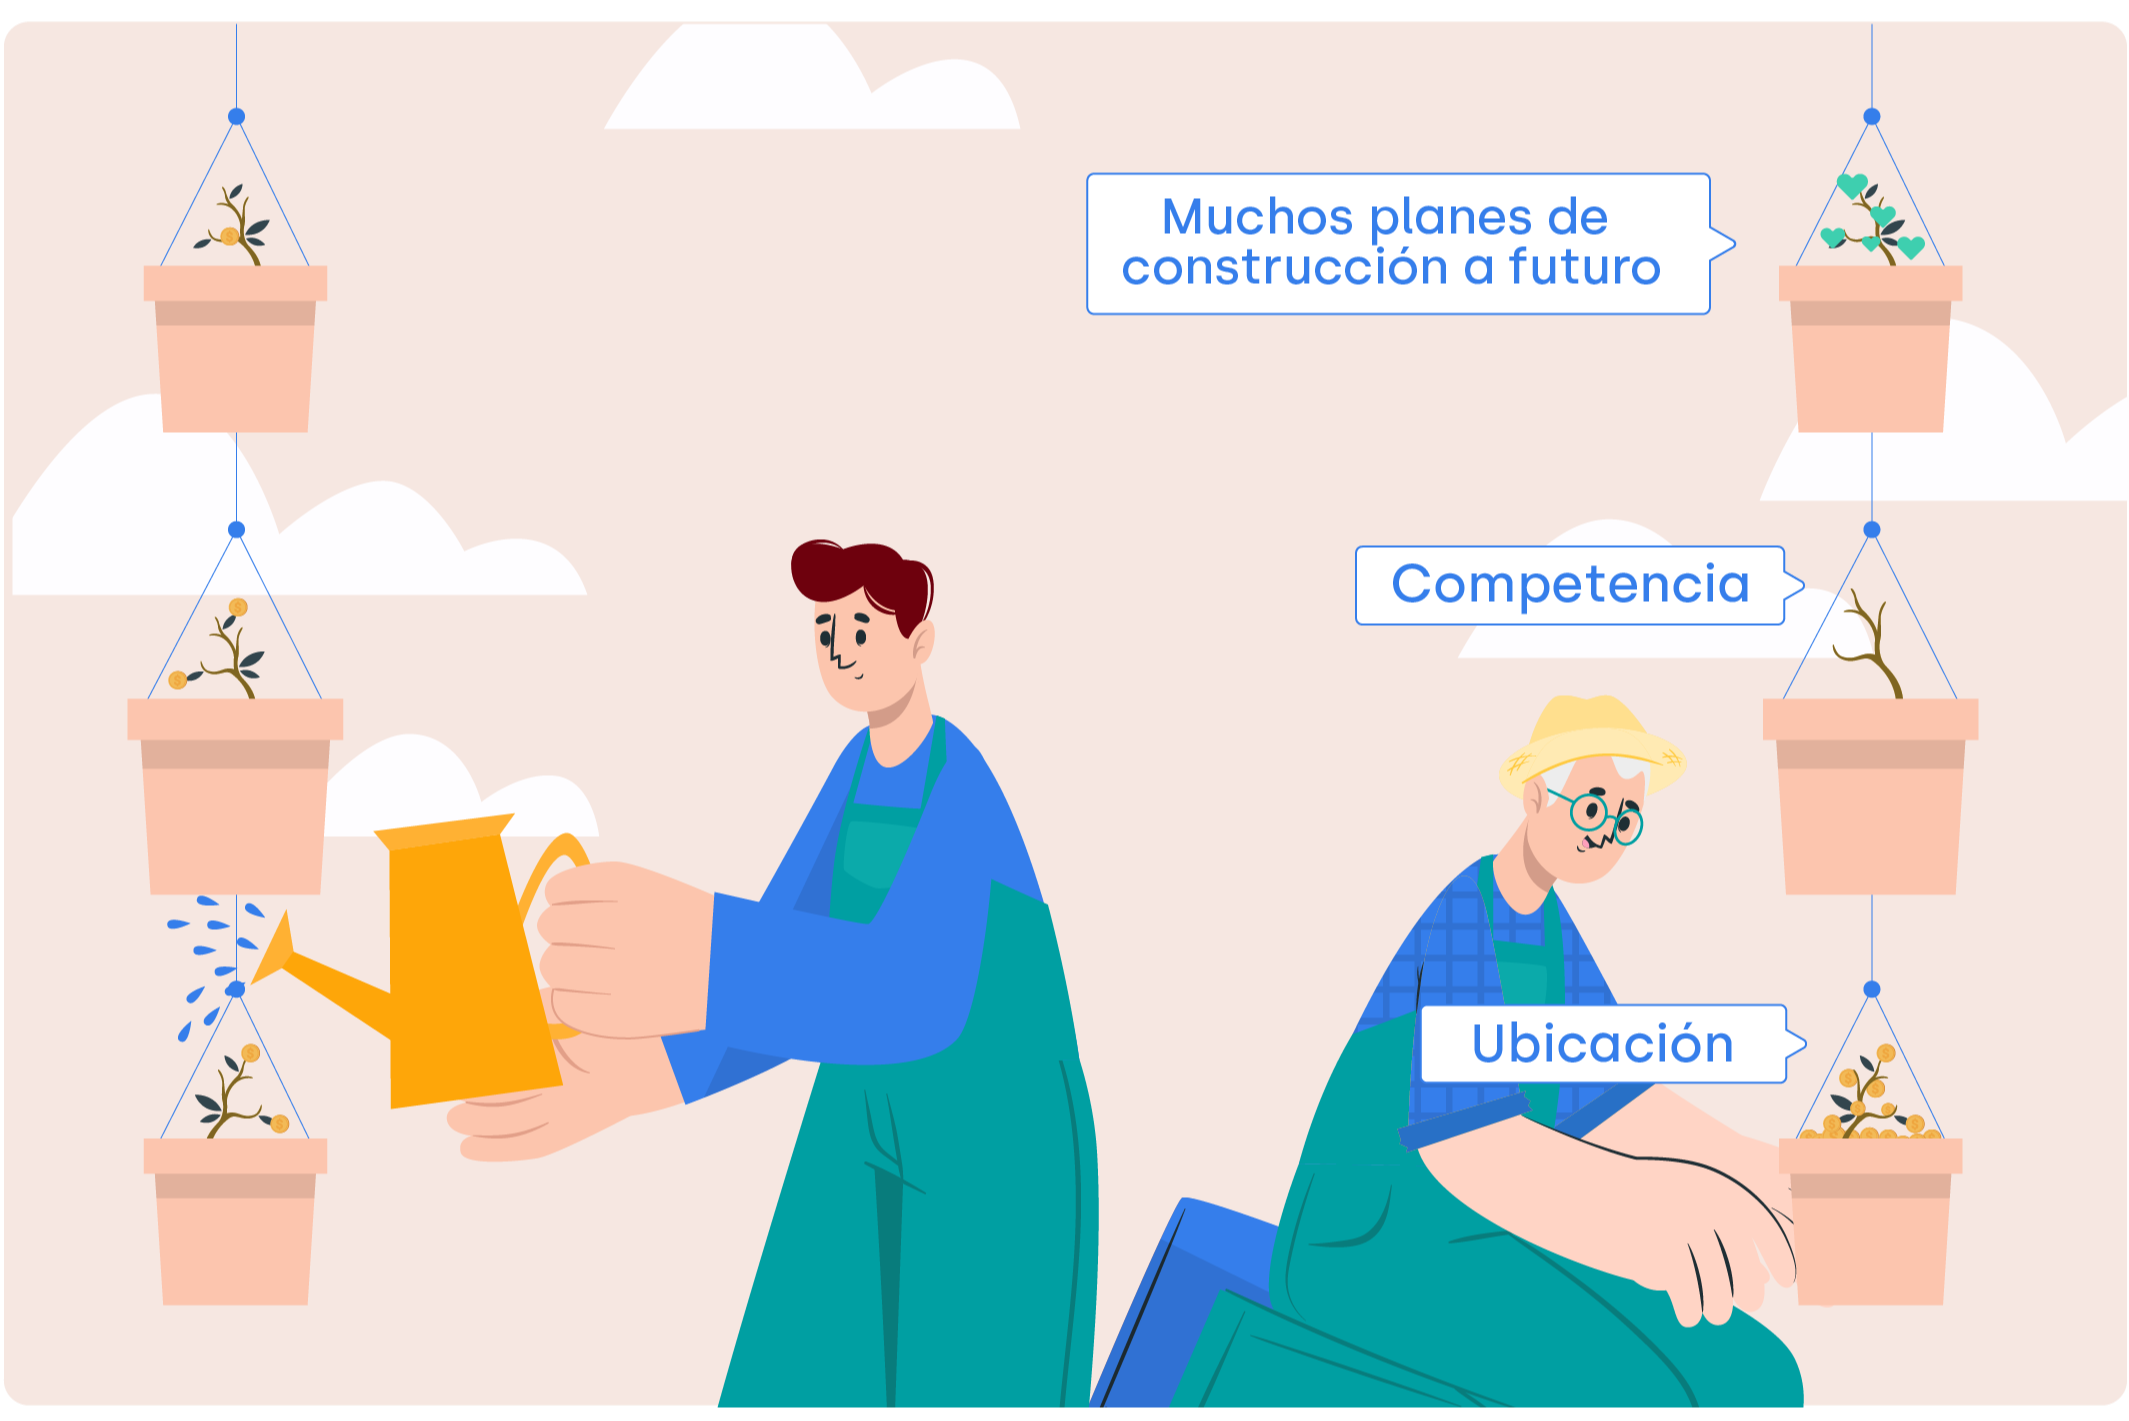 Ilustración de tres plantas que hacen la analogía entre planes de construcción a futuro, competencia y ubicación